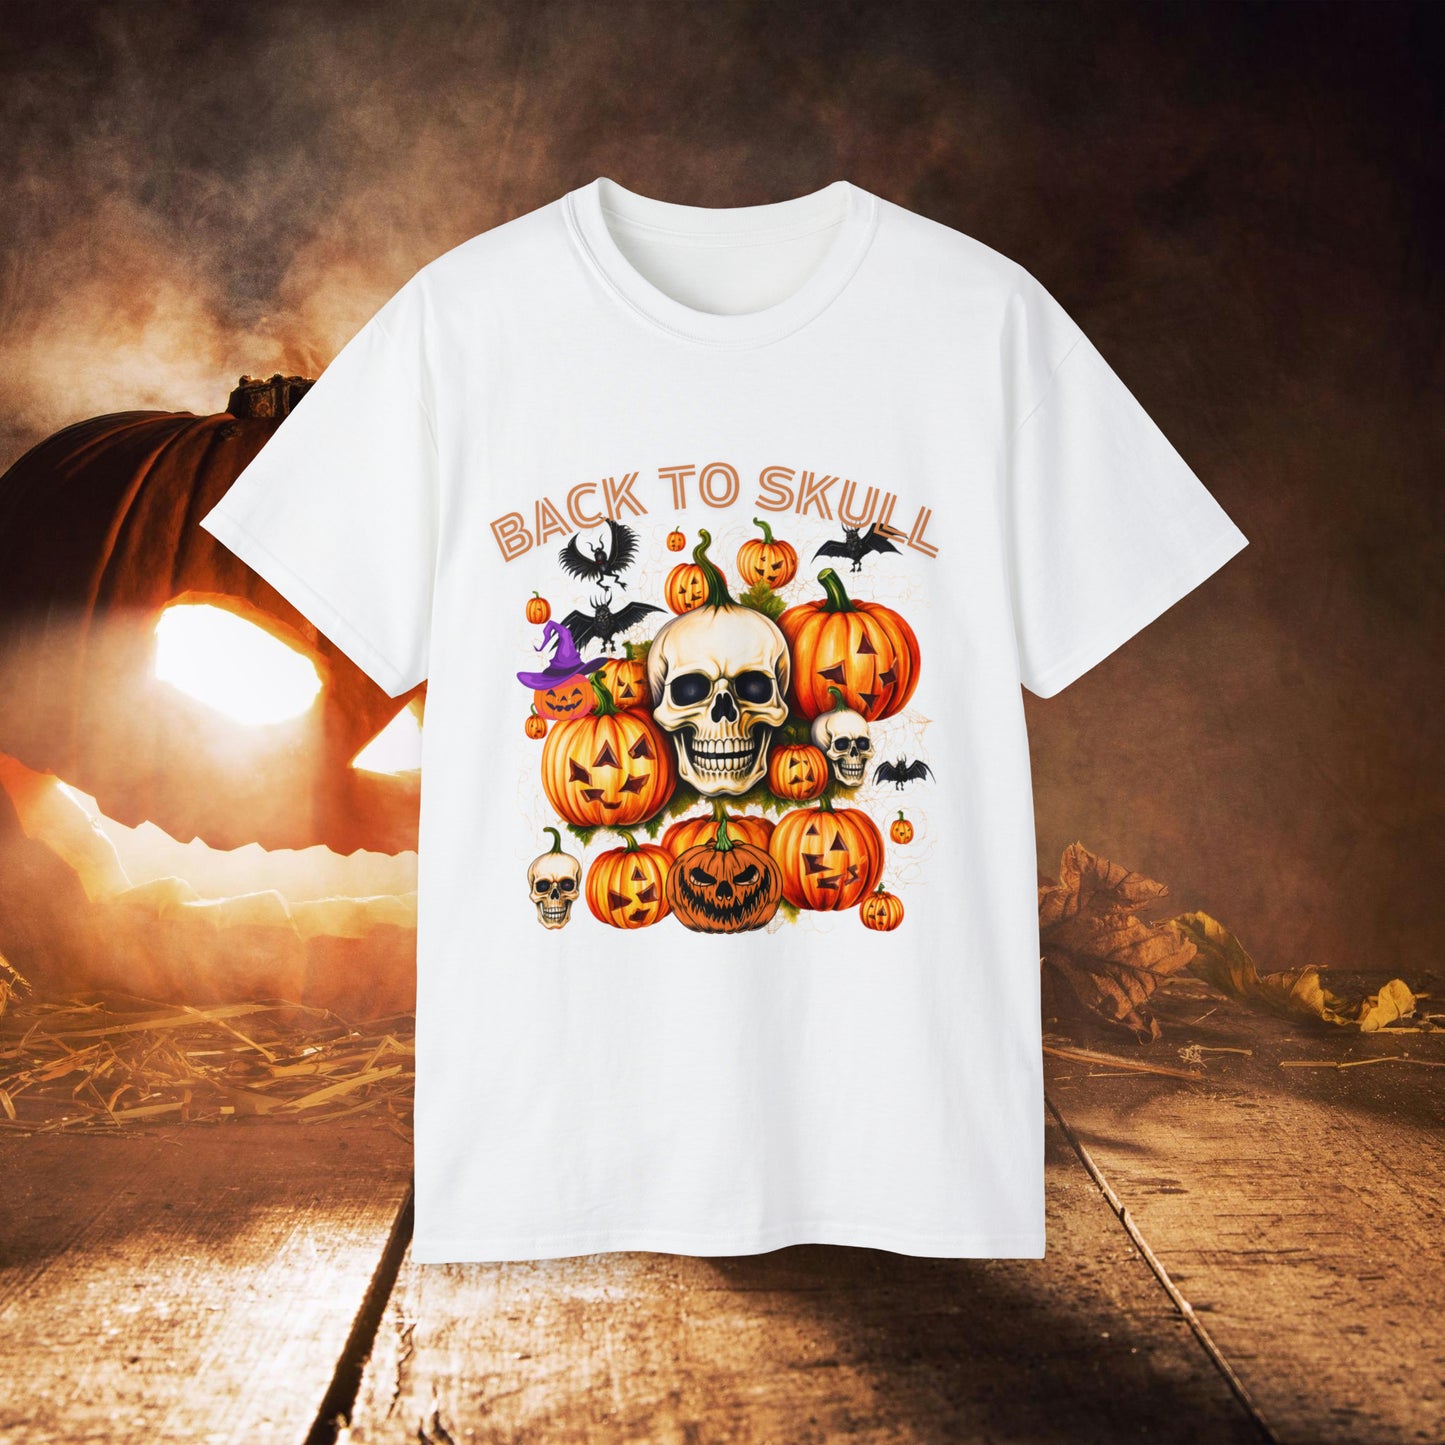 Back to Skull Halloween Tee | Back To Skull T-Shirt White S 